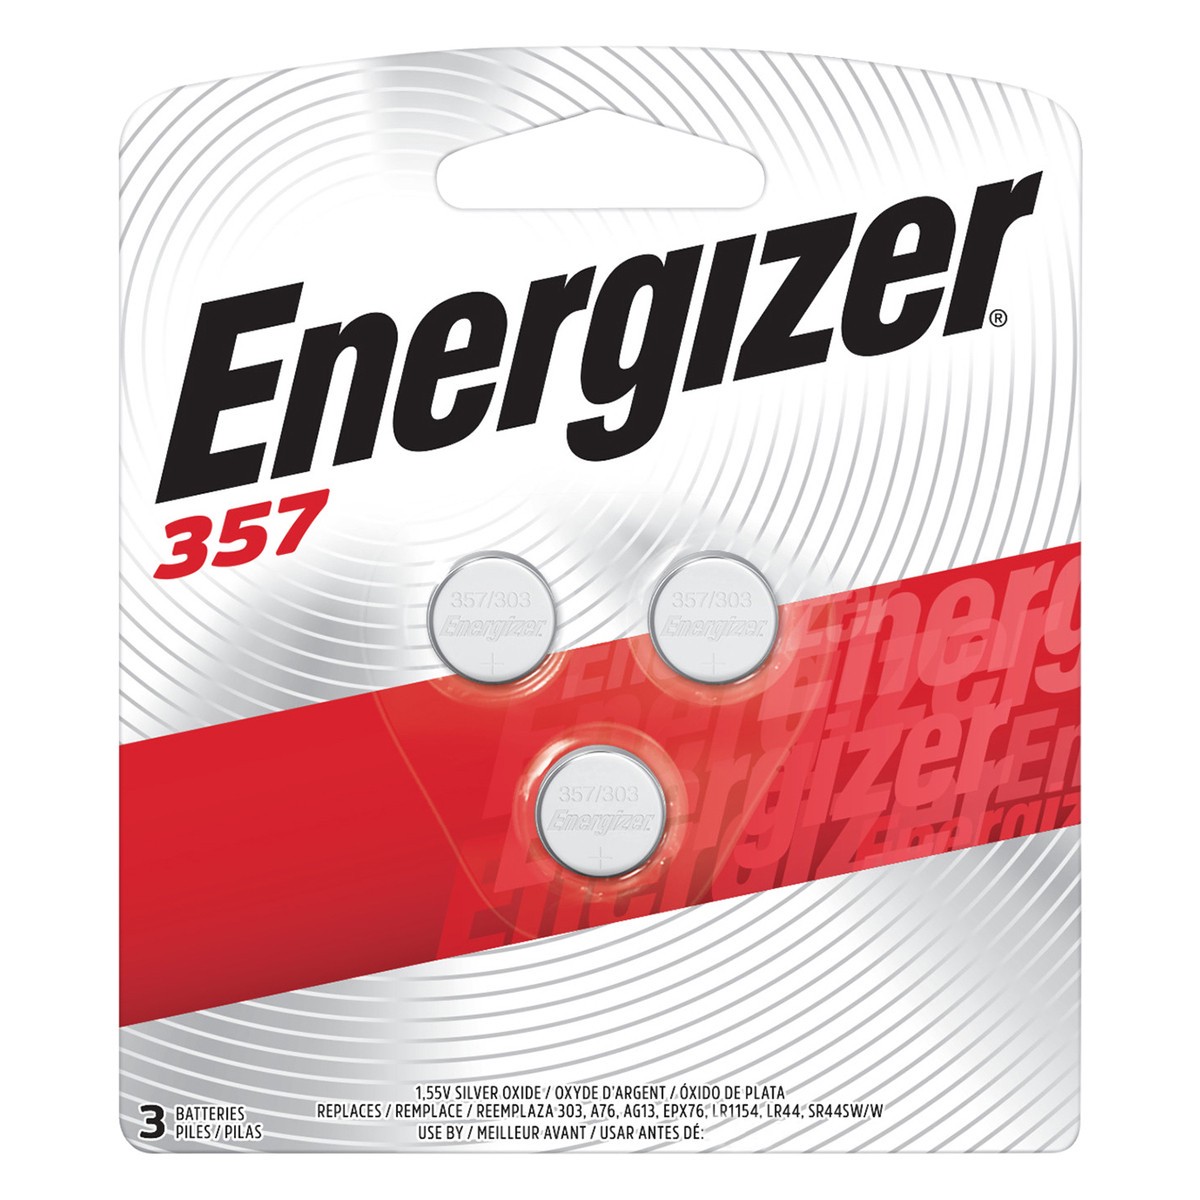 slide 1 of 72, Energizer 357 Silver Oxide Batteries 3 ea Blister Pack, 3 ct